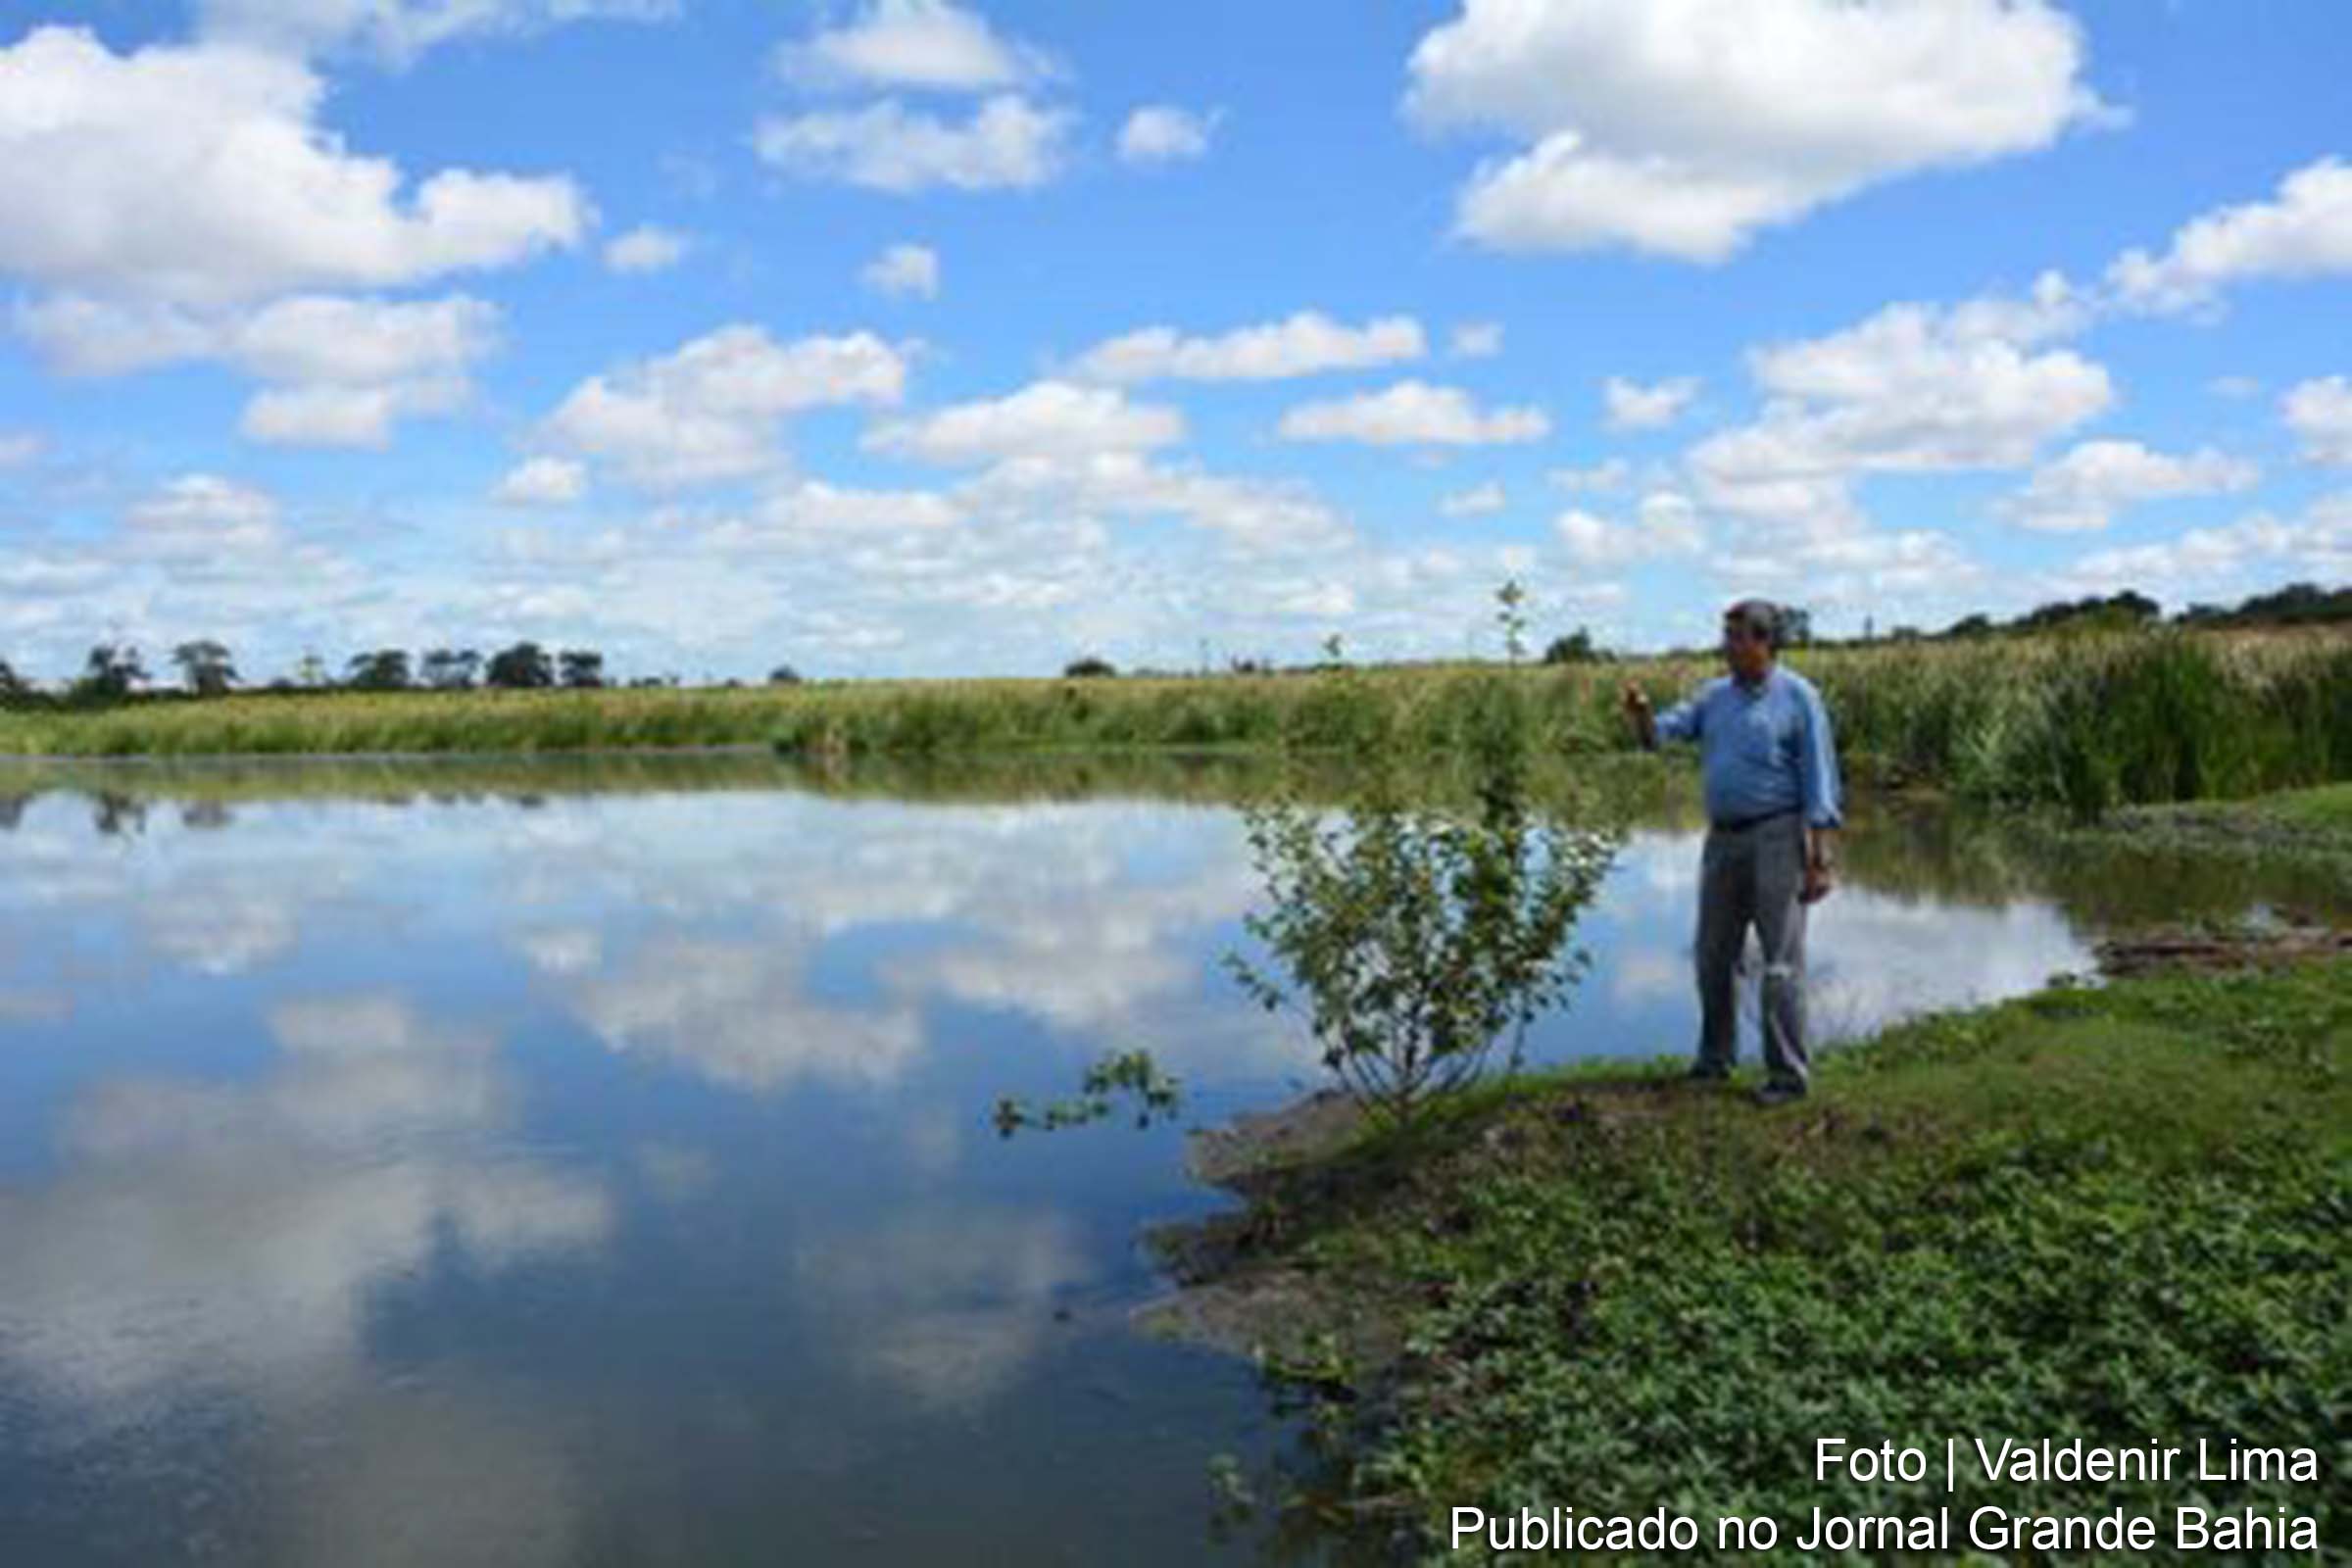 O prefeito Colbert Martins Filho observou que a lagoa de Berreca é um dos afluentes do rio Pojuca, que corta a região, e avaliou que a revitalização é vital para garantir a preservação do meio ambiente.